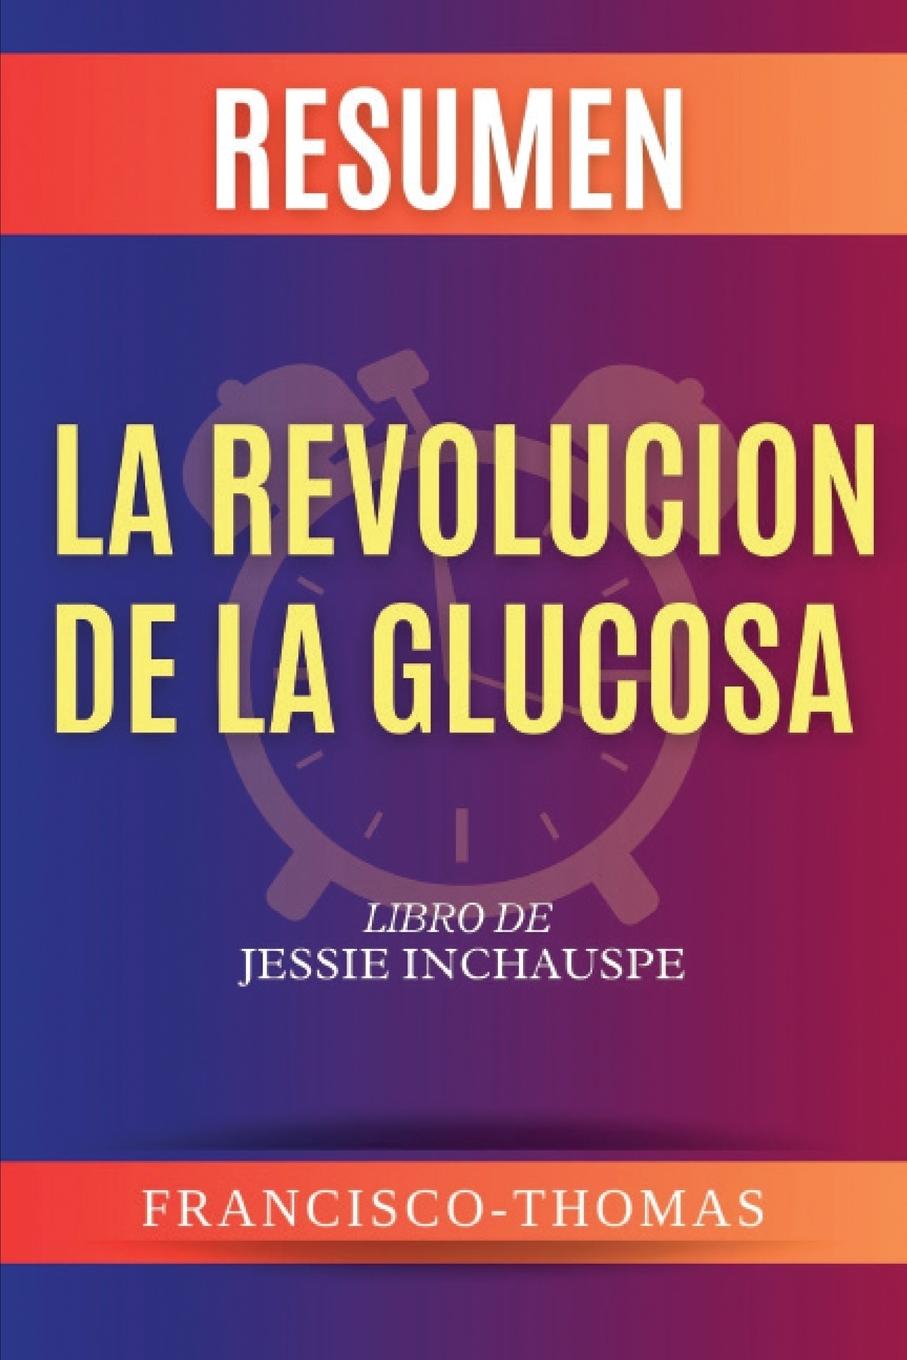 Book Resumen de La Revolución de la Glucosa  Libro de  Jessie Inchauspe 